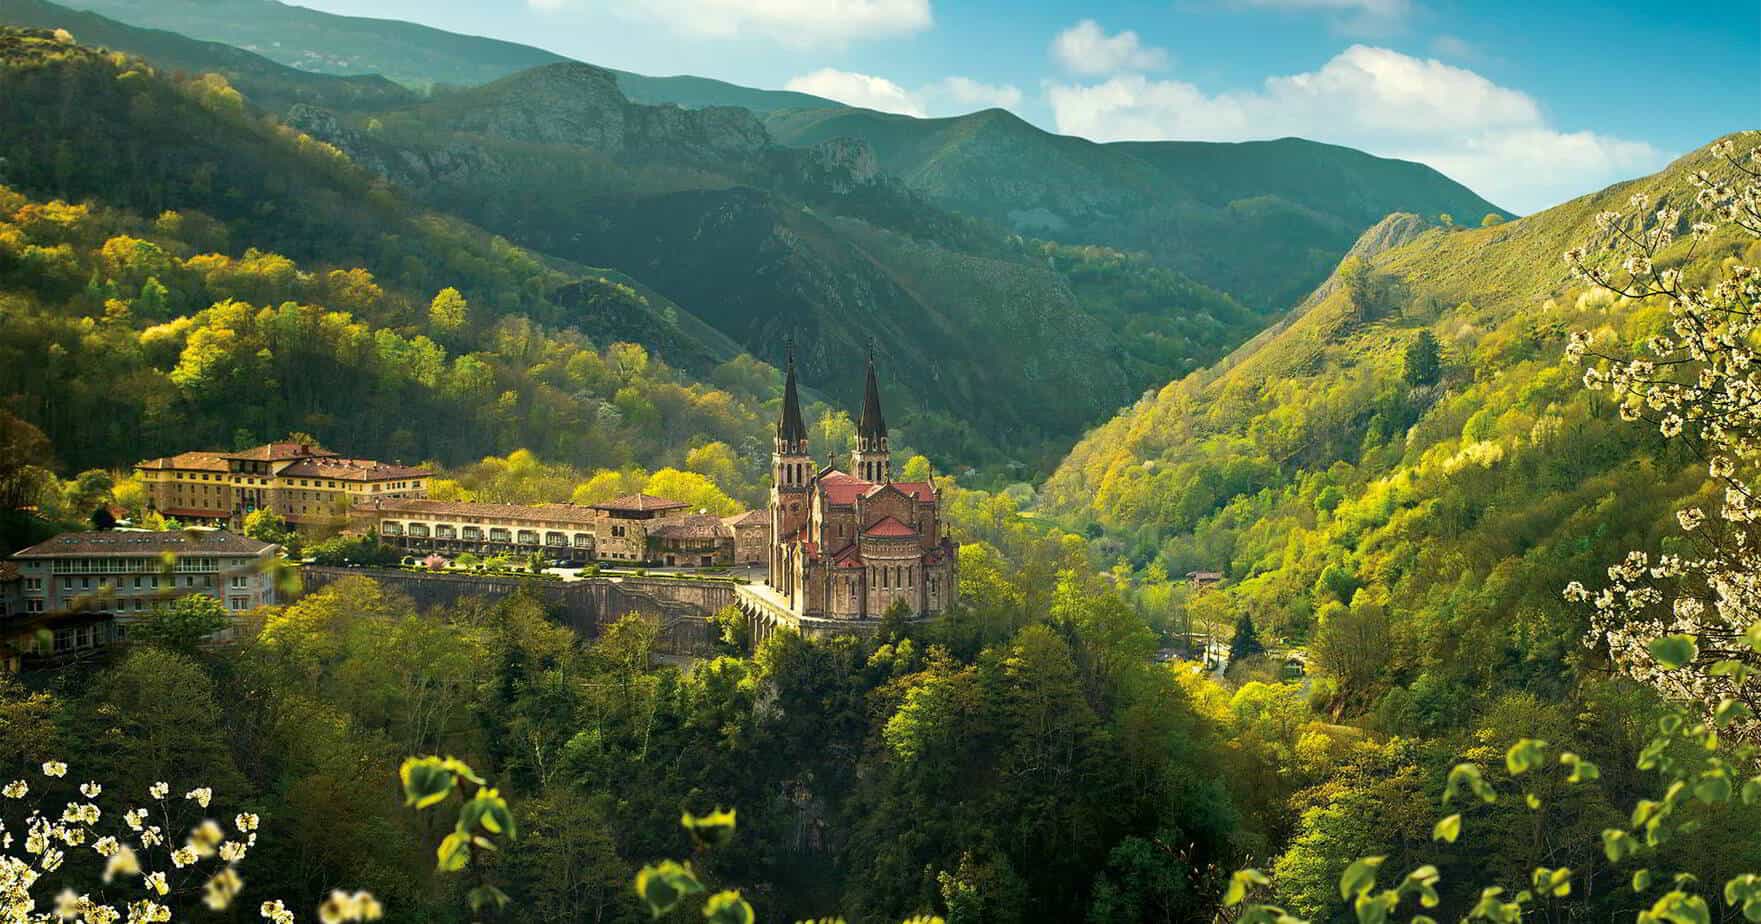 Turismo Asturias - Excursiones a Covadonga, Lagos y Cangas de Onís